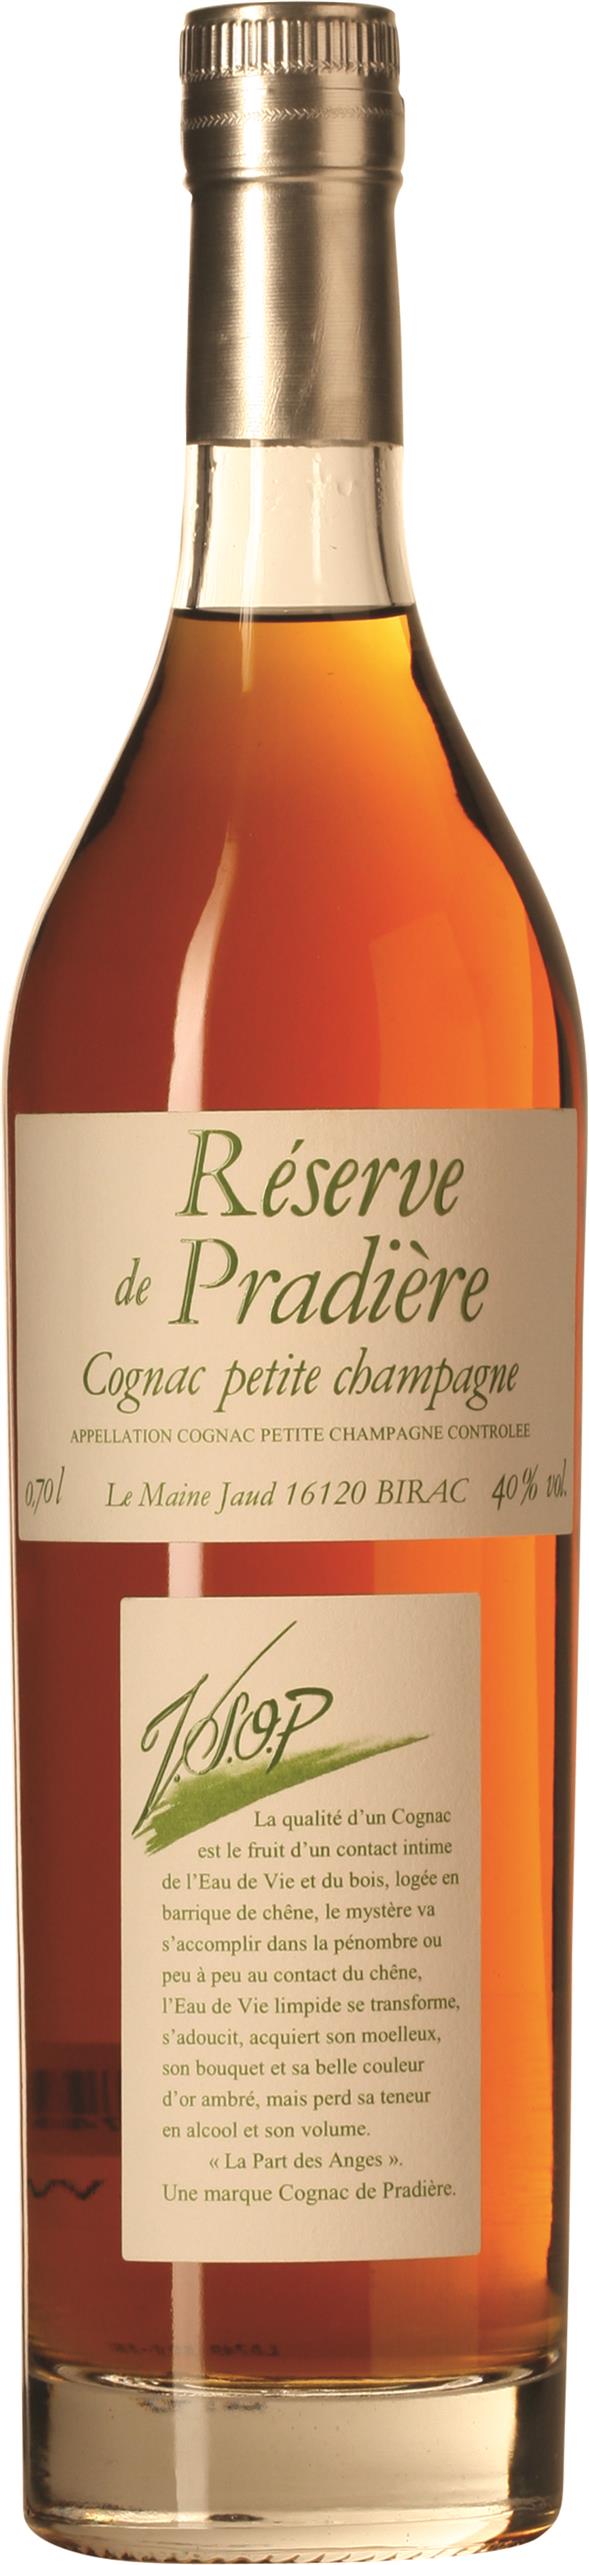 Cognac Lhéraud Réserve de Pradière V.S.O.P